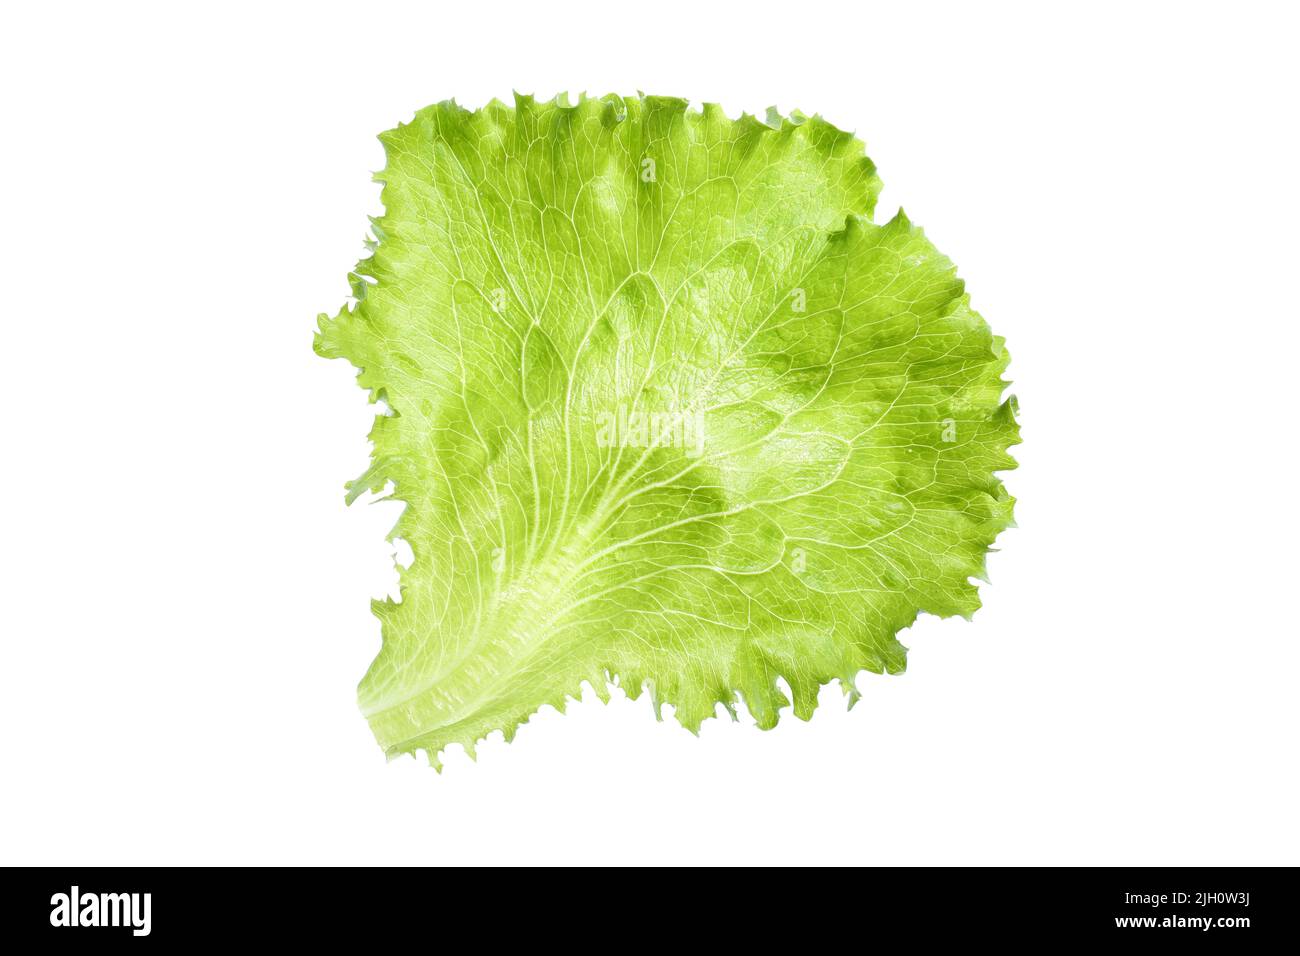 Nahaufnahme eines Blattes aus frischem, grünem, organischem Lockensalat (Lactuca Sativa), isoliert auf weißem Hintergrund. Stockfoto